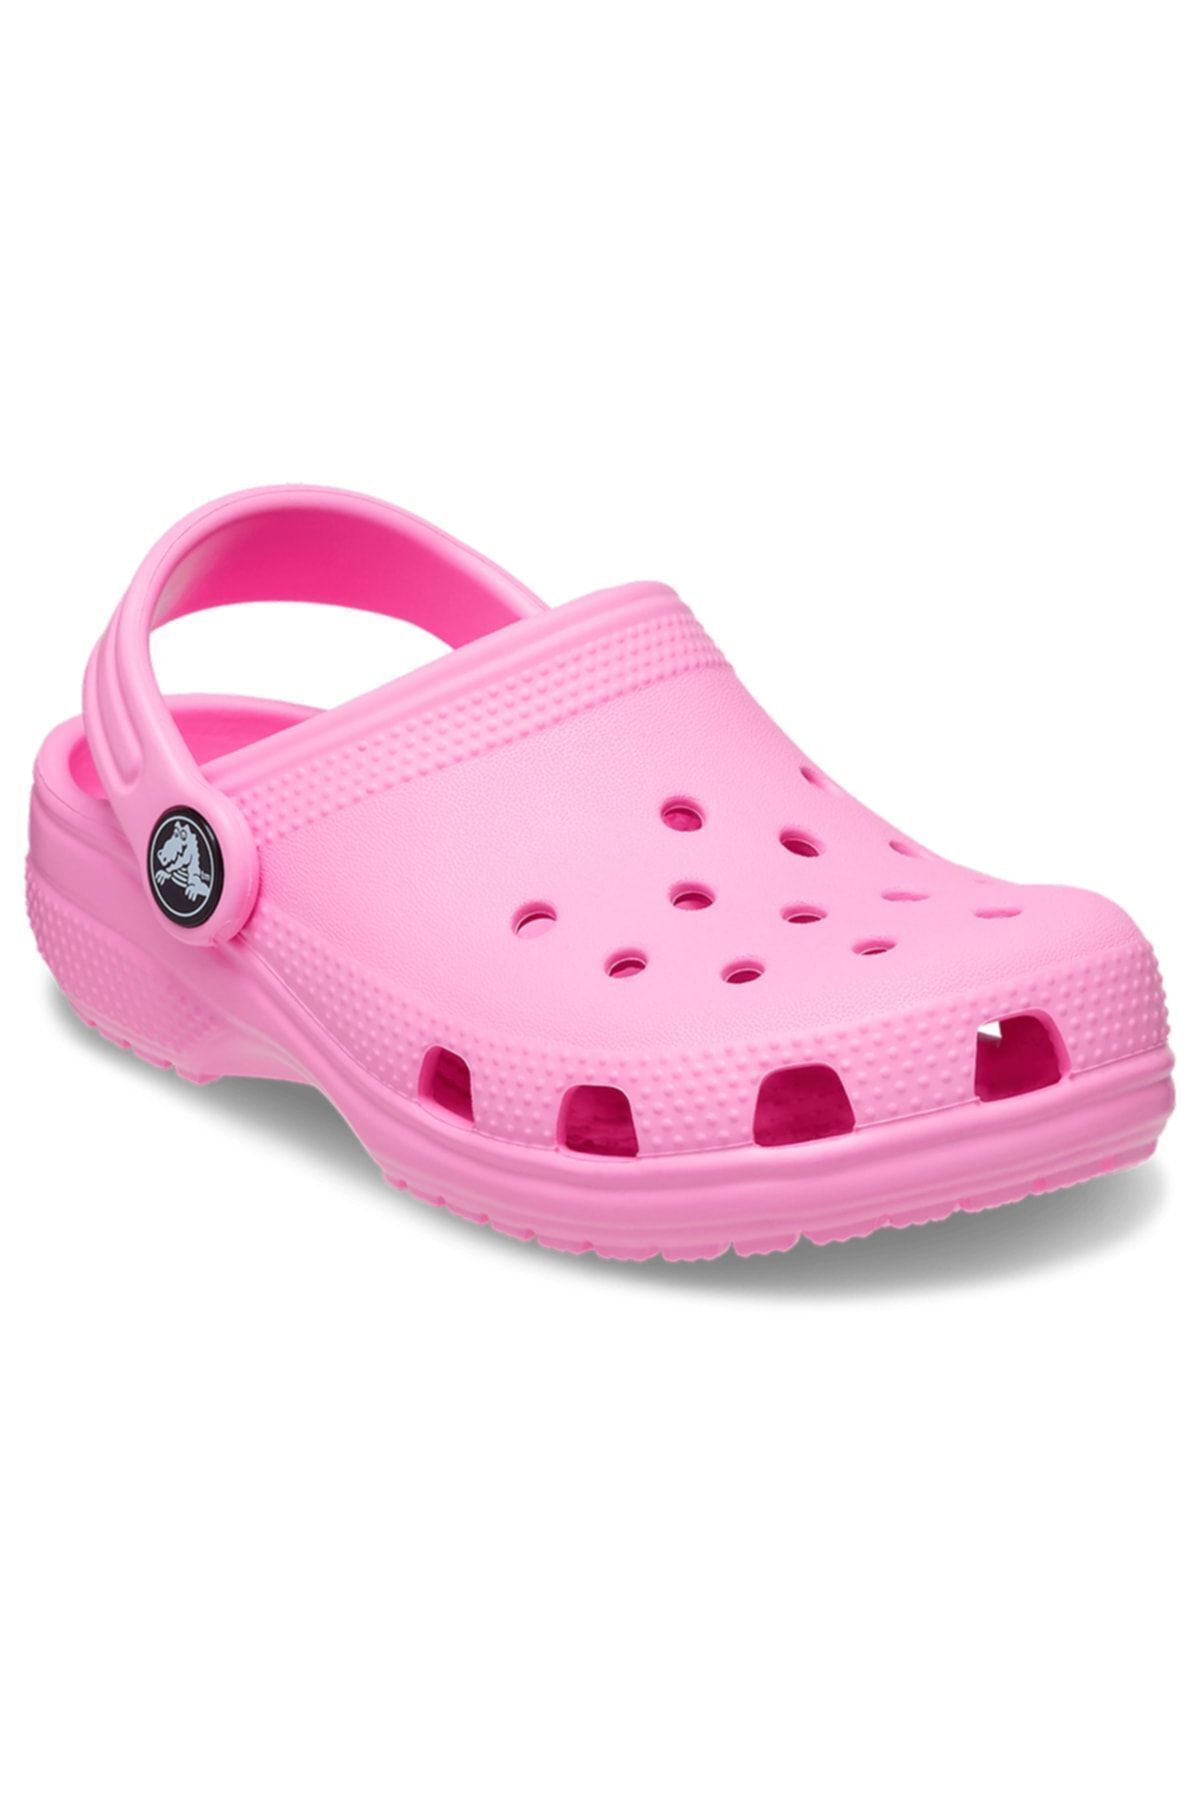 Crocs 206990-6sw Toddler Classic Clog Çocuk Terlik